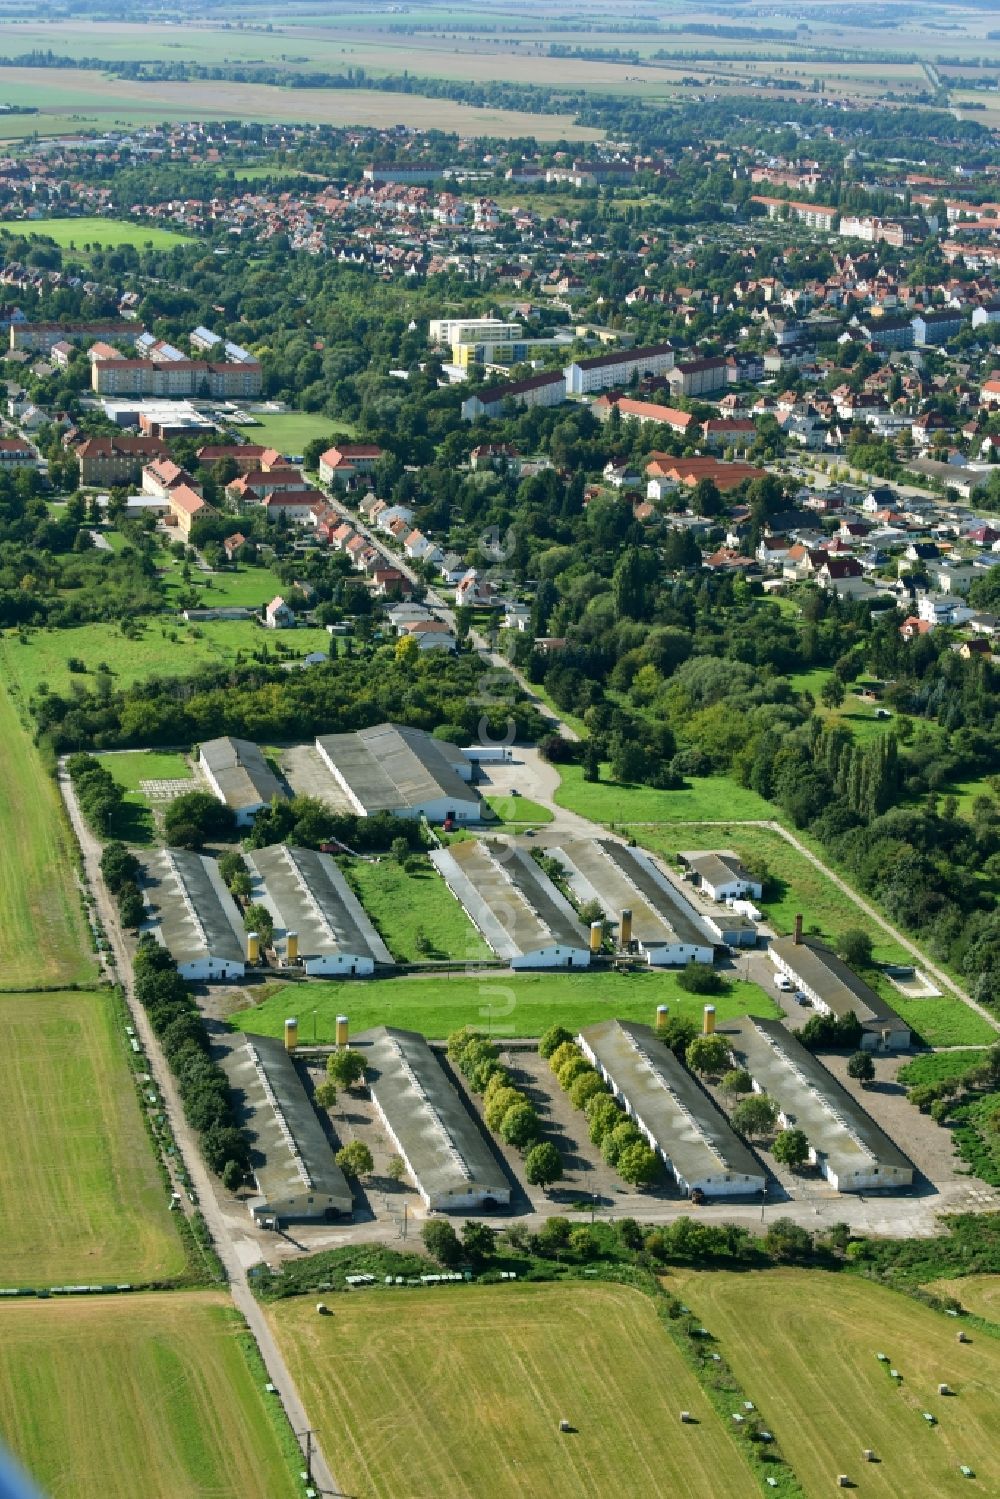 Luftbild Halberstadt - Tierzucht- Stallanlagen Tierzucht für die Fleischproduktion in Halberstadt im Bundesland Sachsen-Anhalt, Deutschland